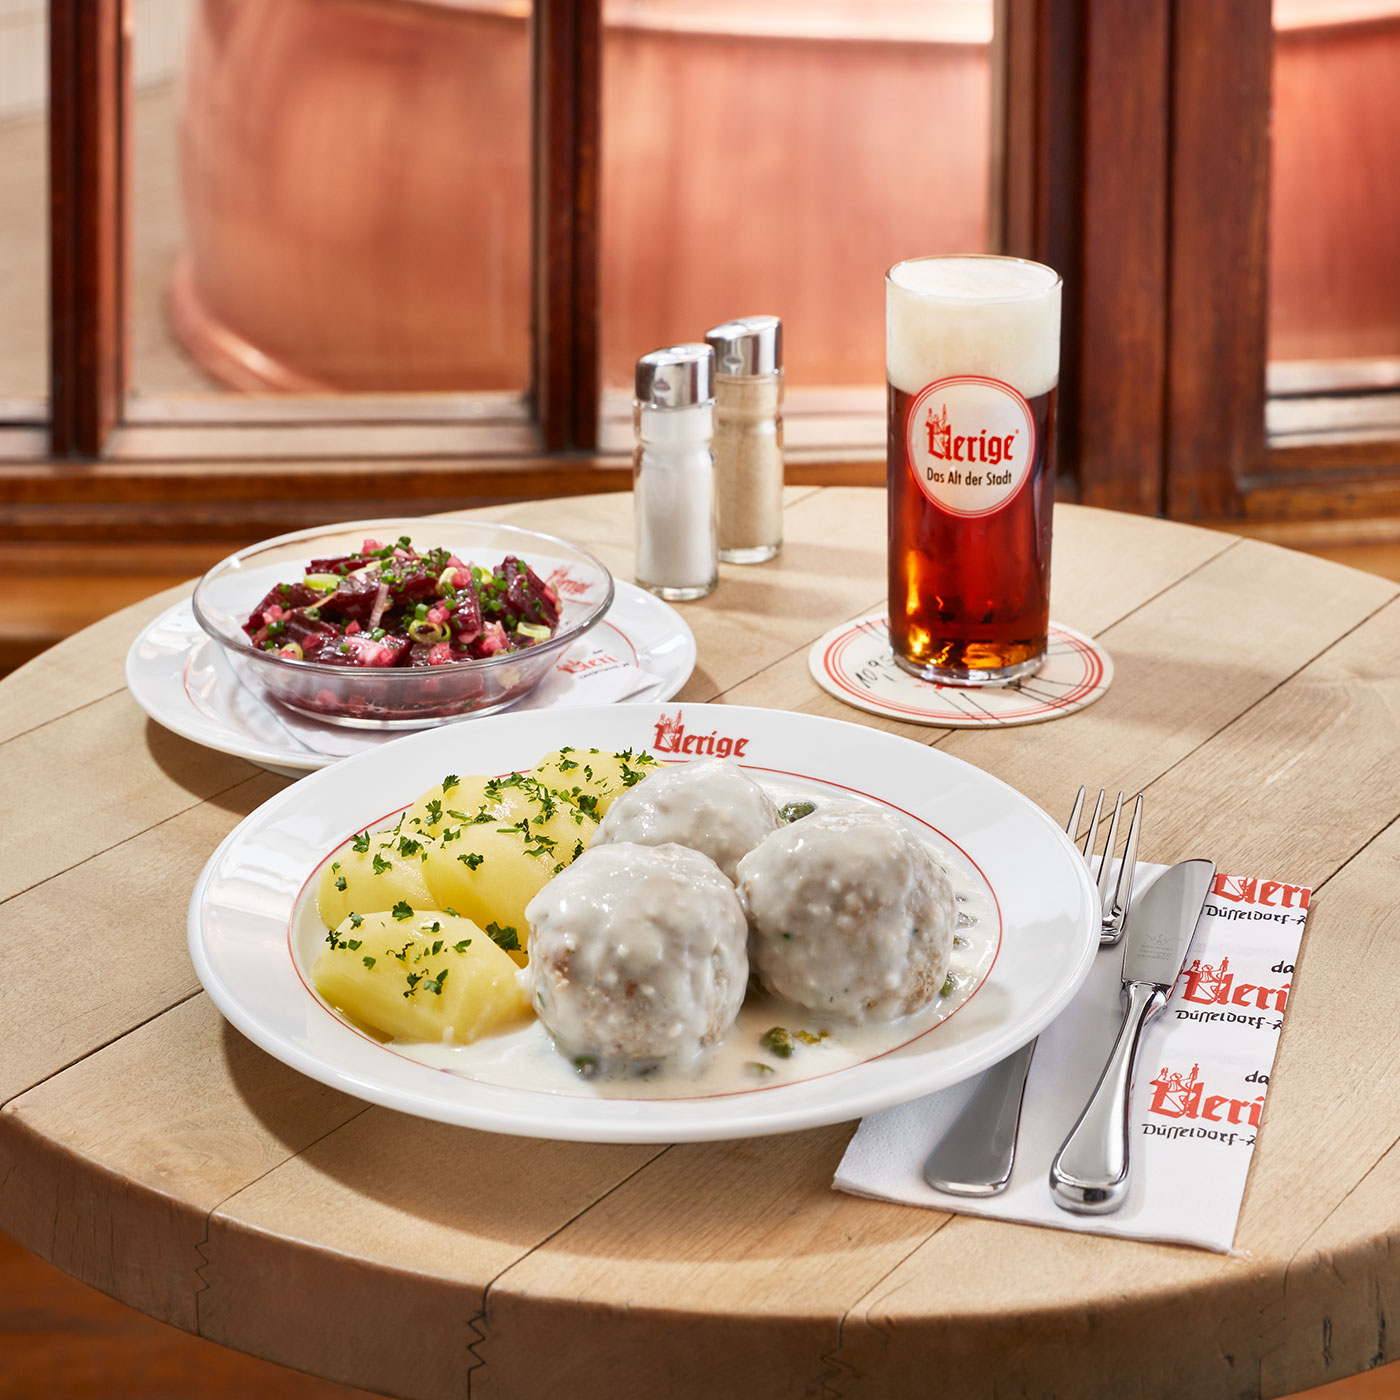 Tuesday: Königsberg Meatballs